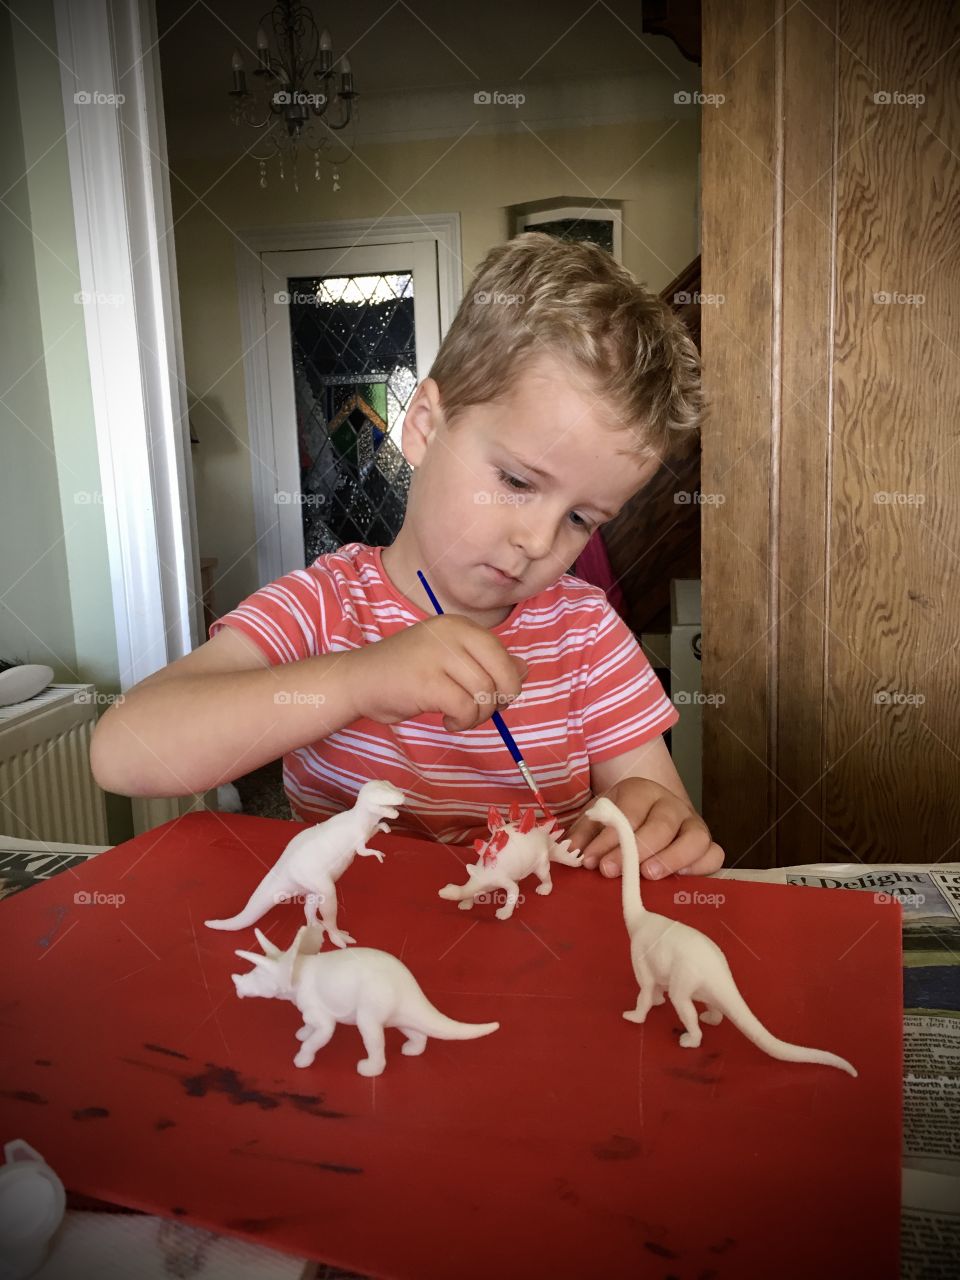 Painting dinosaurs 